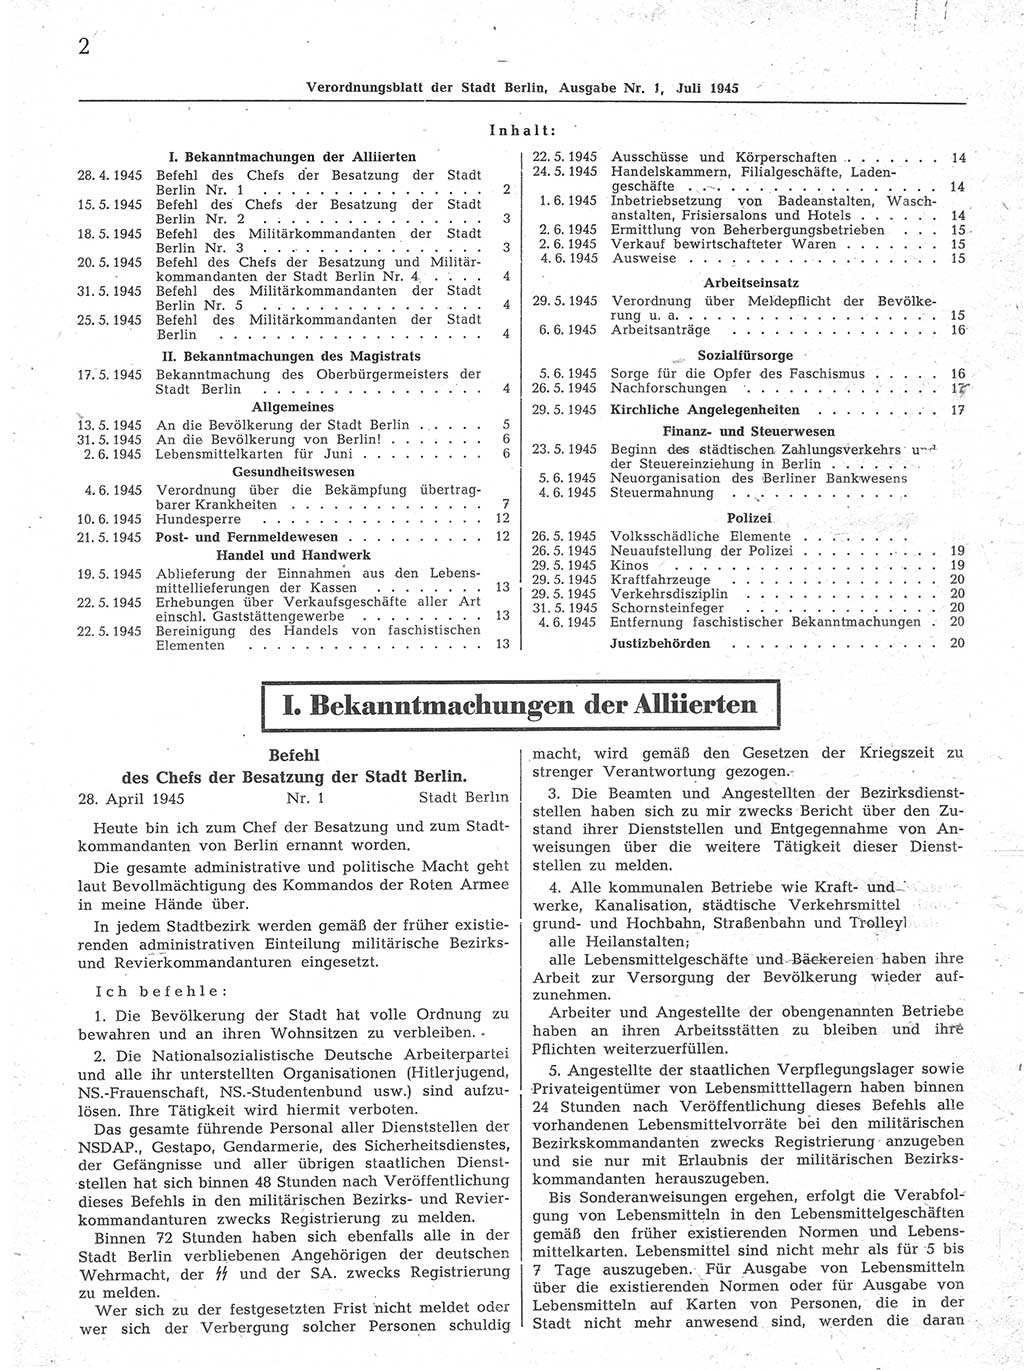 Verordnungsblatt (VOBl.) der Stadt Berlin 1945, Seite 2 (VOBl. Bln. 1945, S. 2)